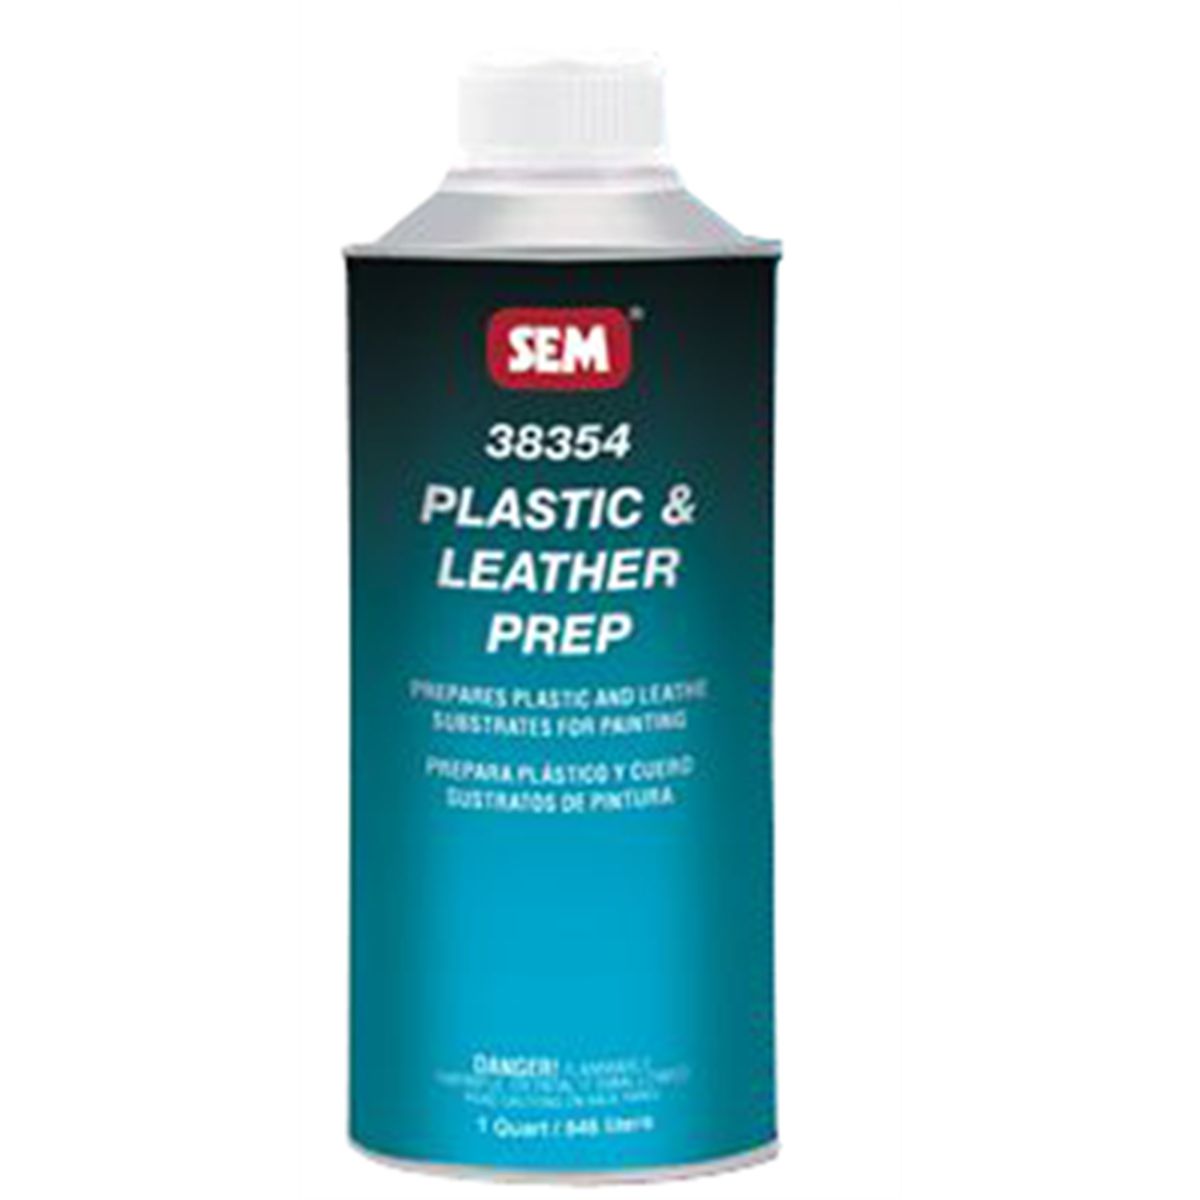 Plastic / Leather Prep - Quart